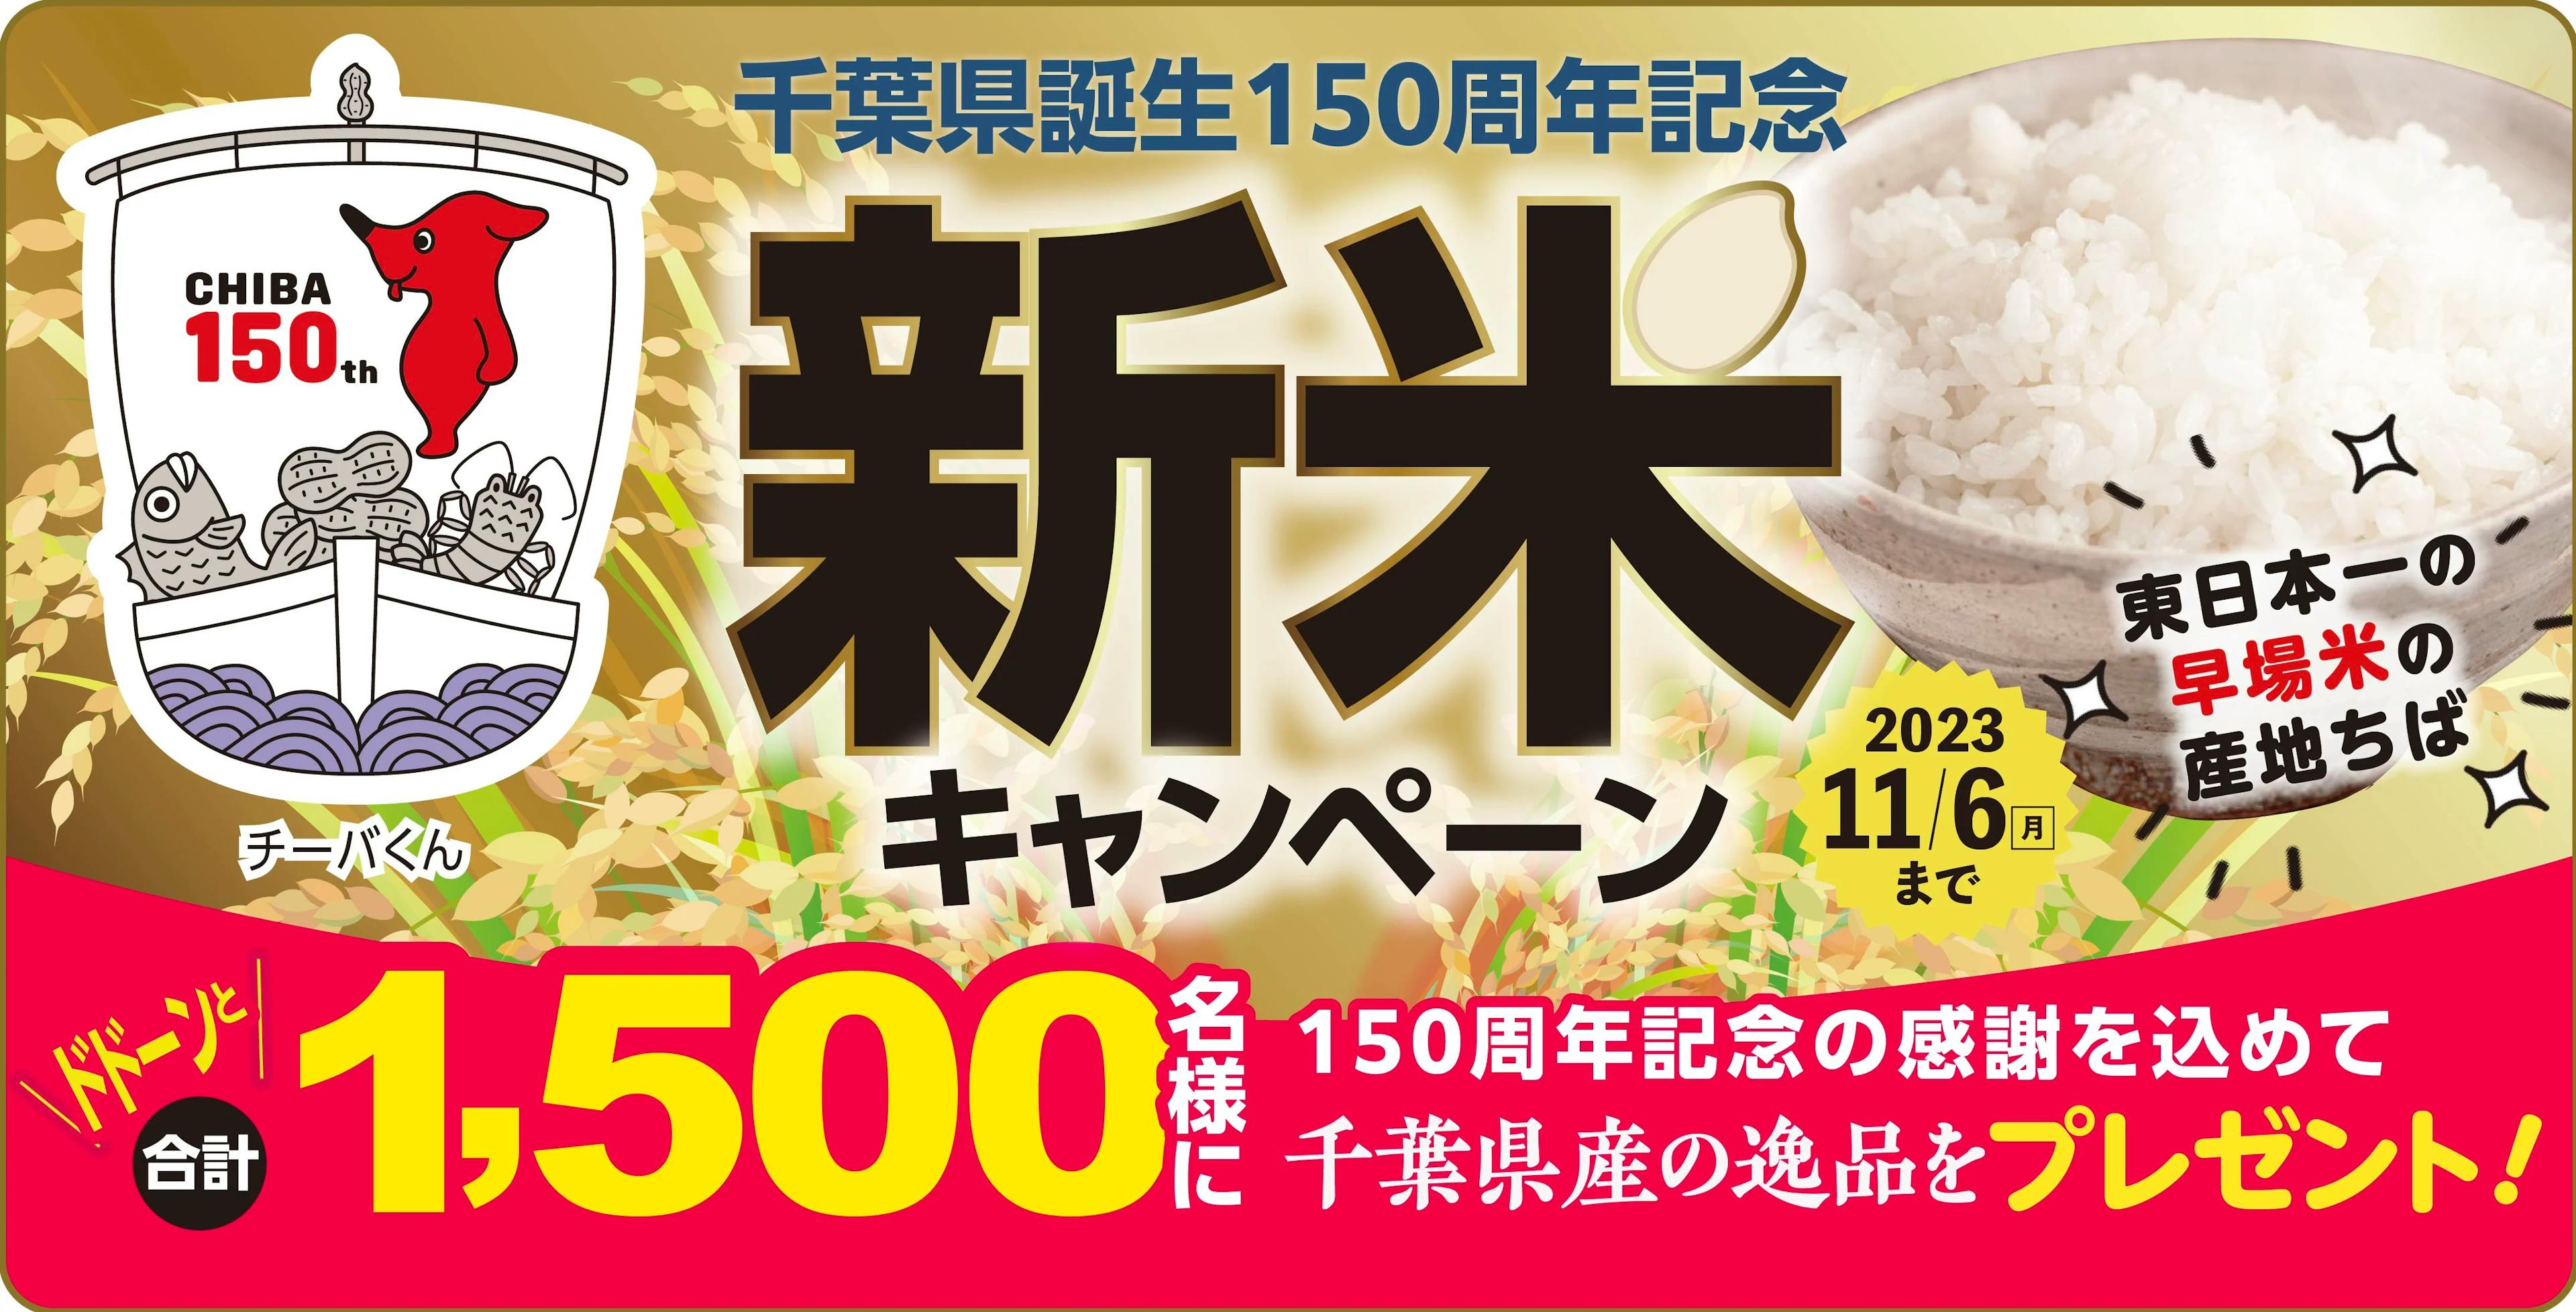 千葉県誕生150周年を記念して1,500名様に千葉県産の逸品が当たる「千葉県誕生150周年記念 新米キャンペーン」を開催中！